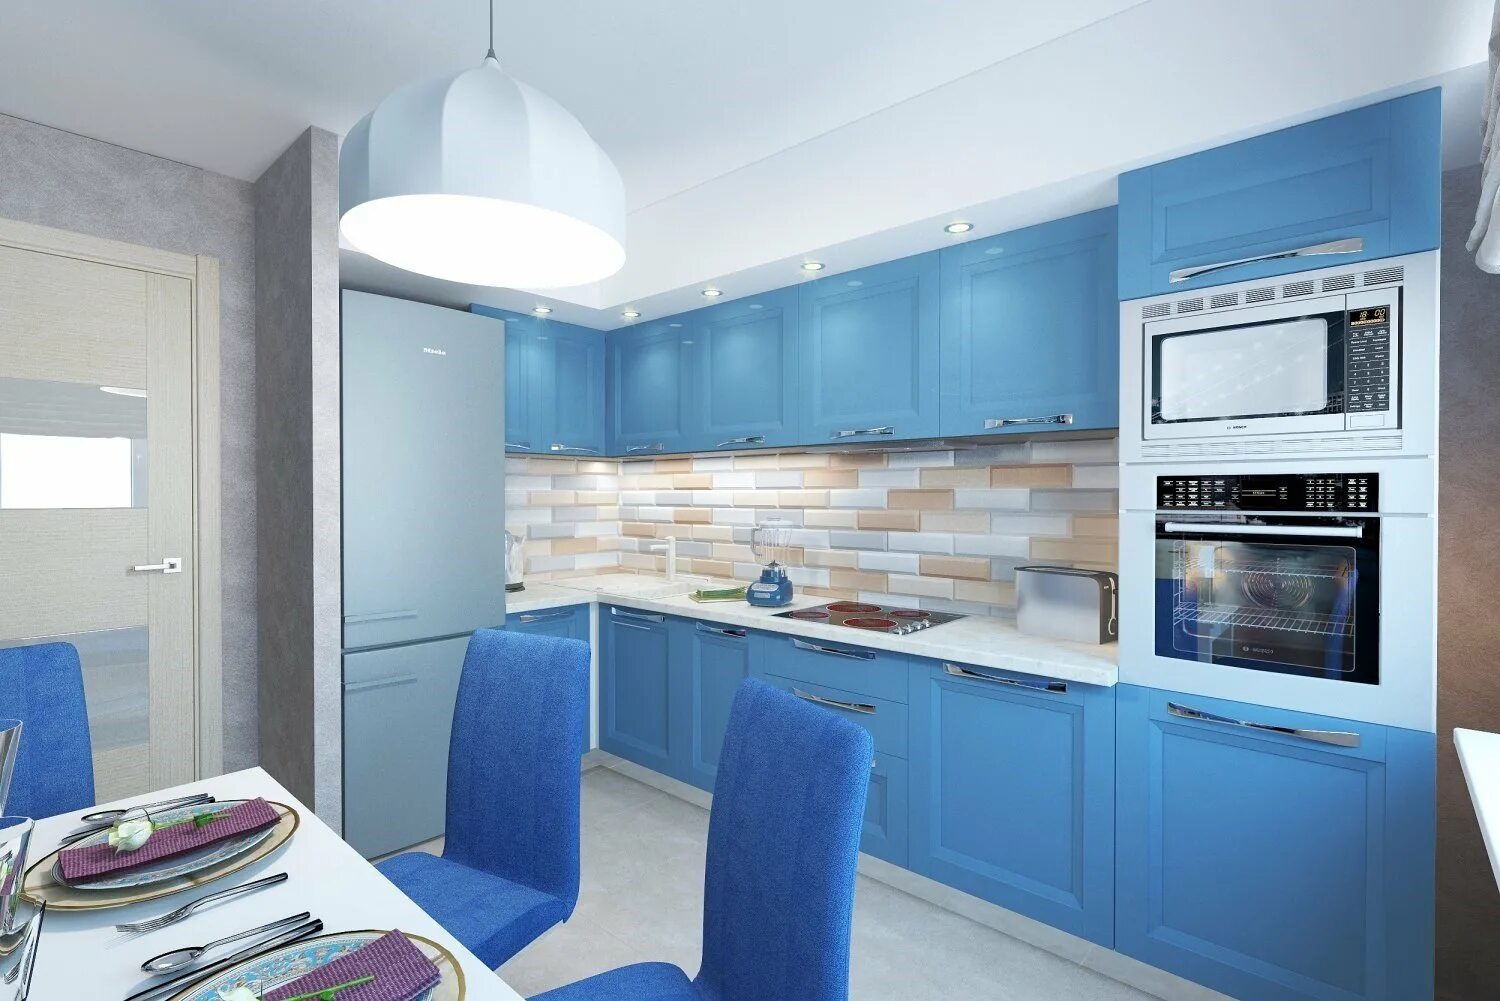 Синяя кухня. Кухня хофф голубая. Кухня в голубых тонах. Кухня в голубом цвете. Кухонный гарнитур в голубых тонах.